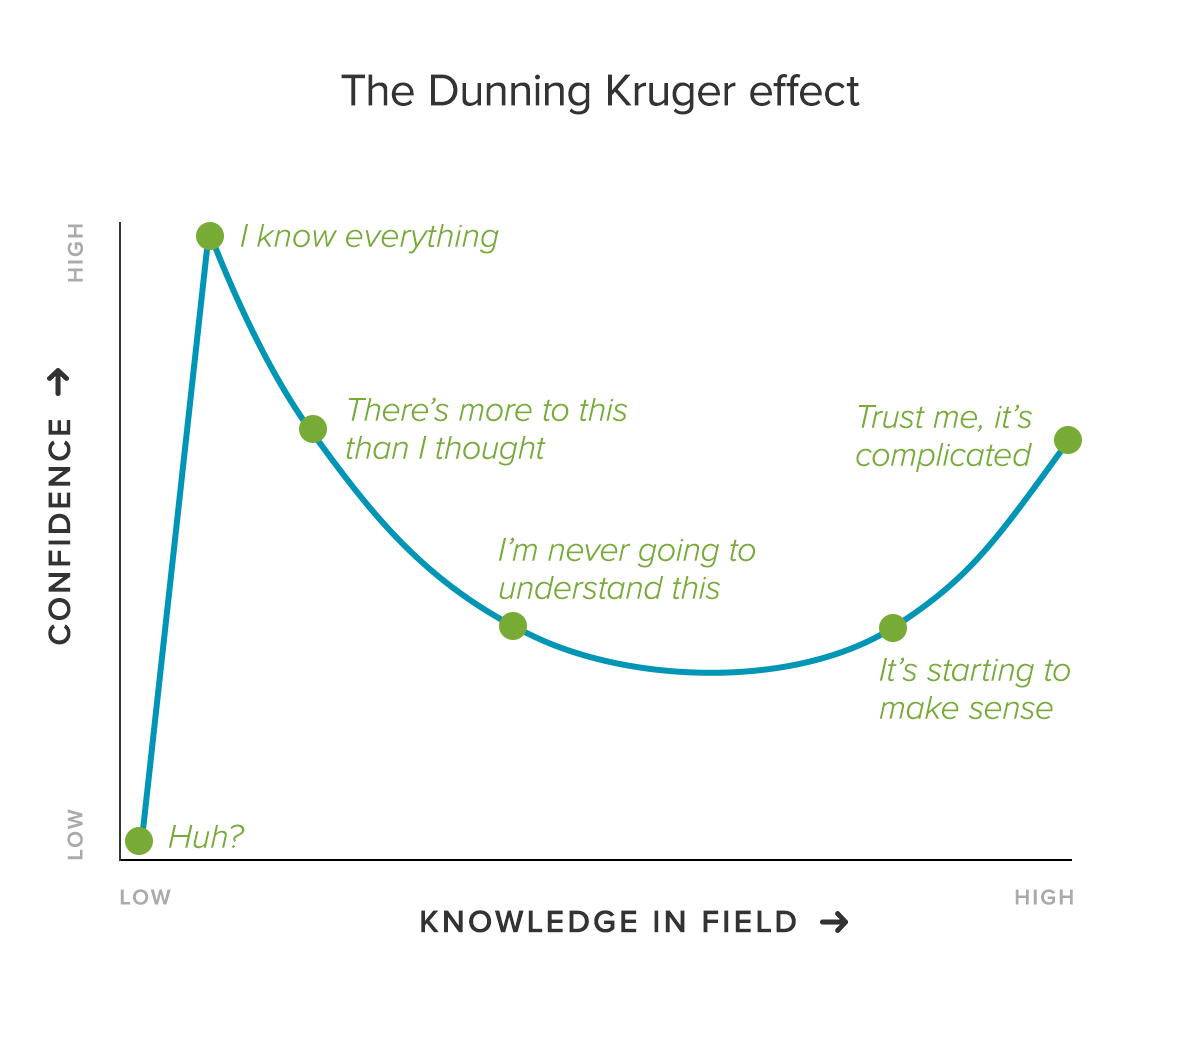 Hiệu ứng Dunning & Kruger